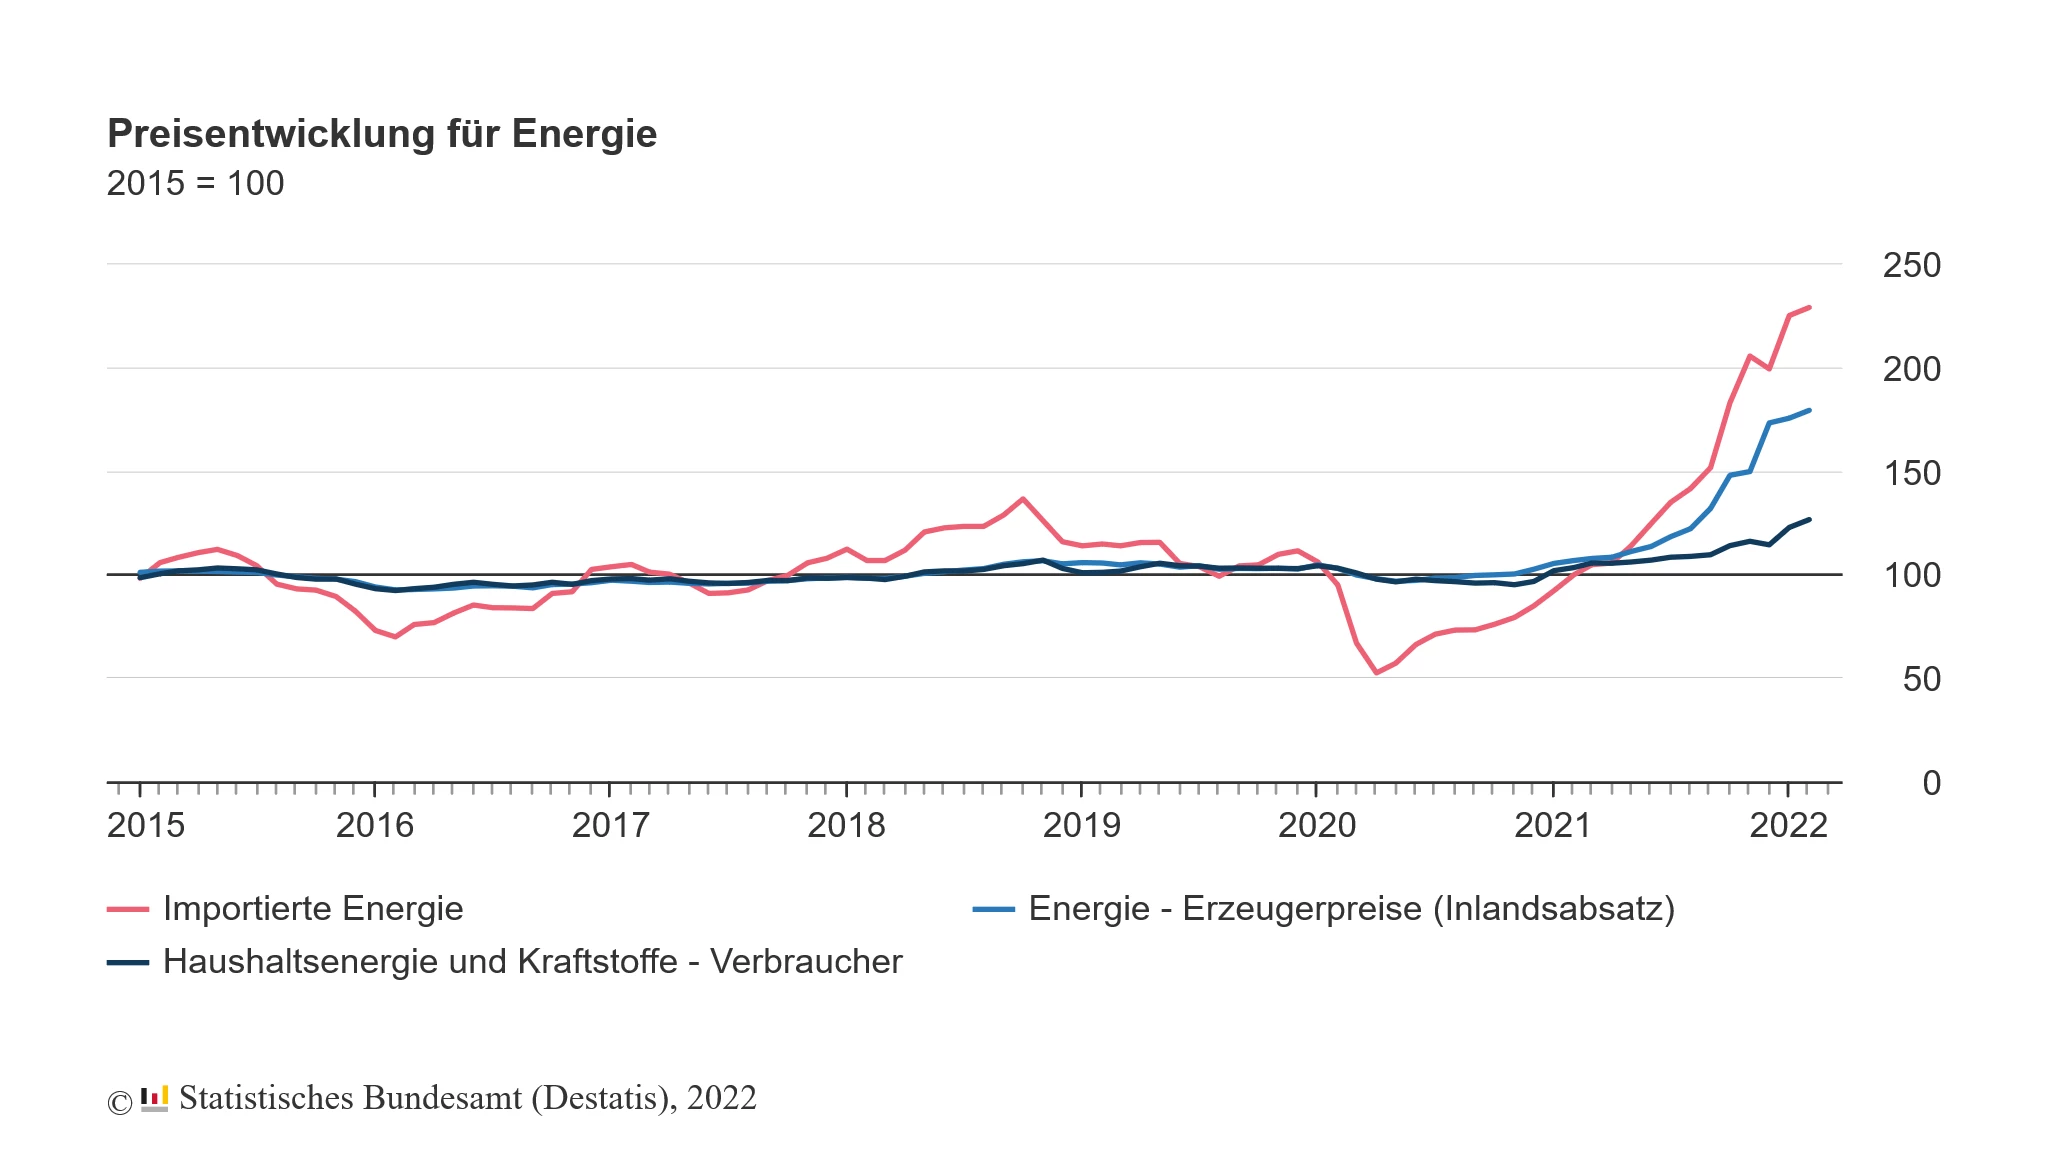 eine Statistik der Preisentwicklung für Energie aus dem Jahr 2015-2022